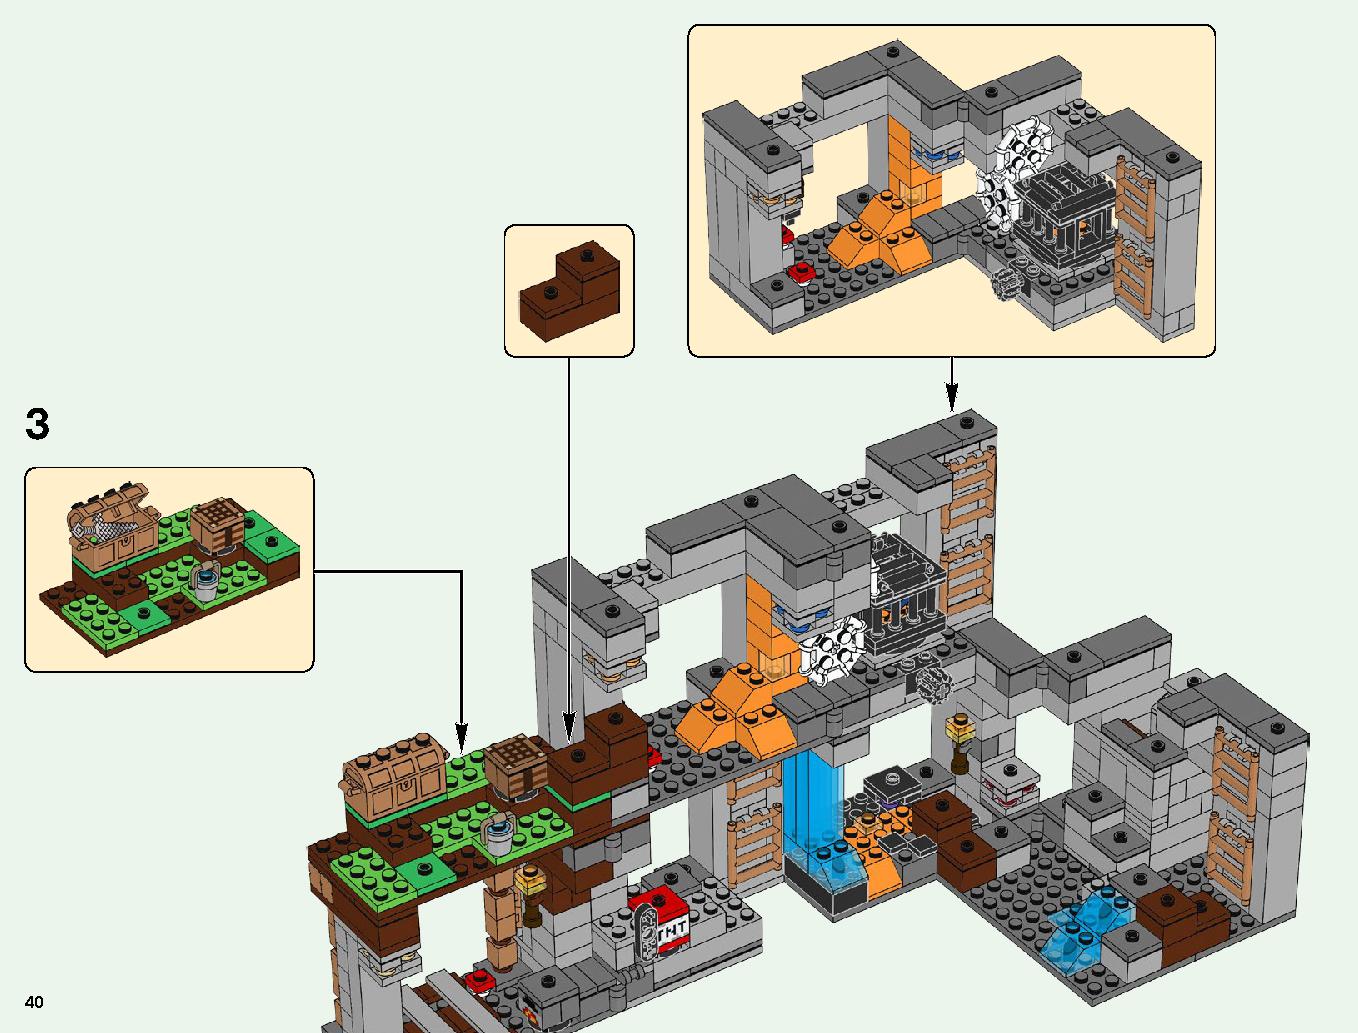 ベッドロックの冒険 21147 レゴの商品情報 レゴの説明書・組立方法 40 page